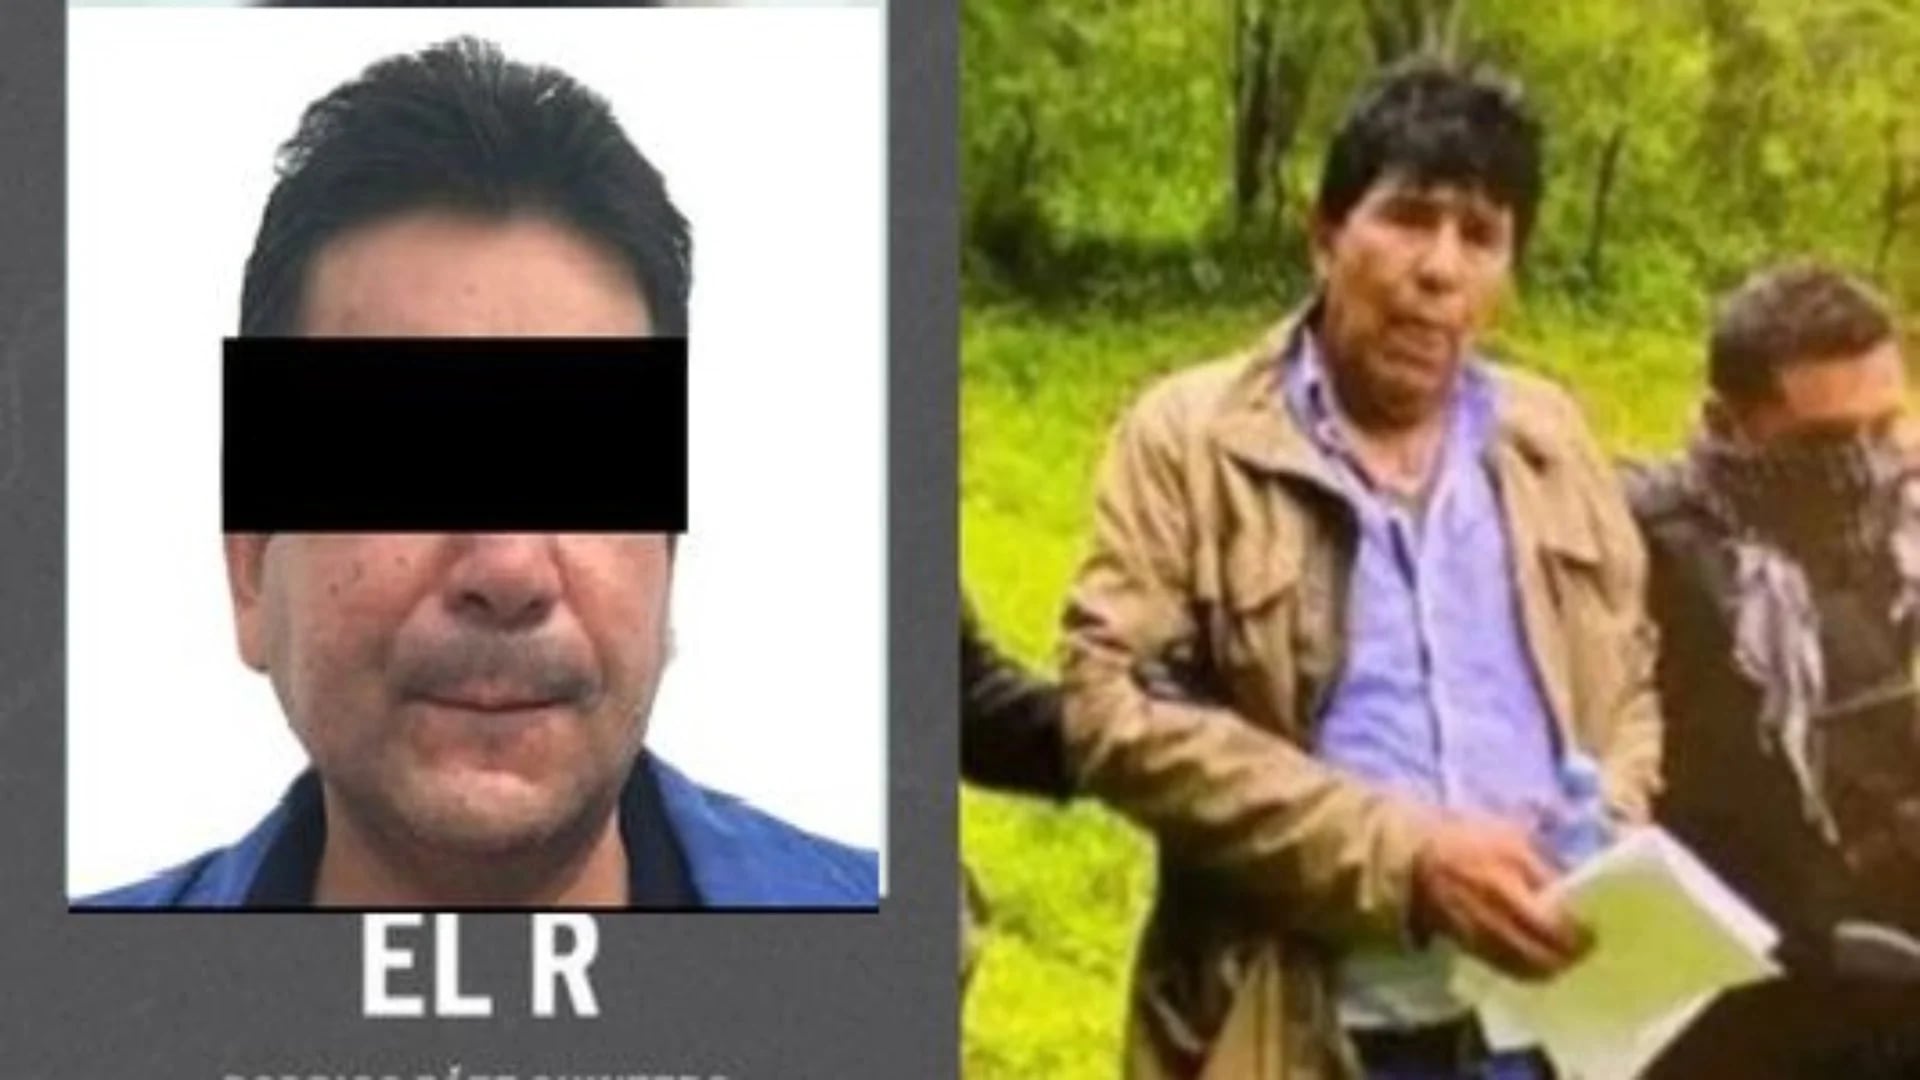 Concedieron extradición a EEUU de “El R”, sobrino de Rafael Caro Quintero